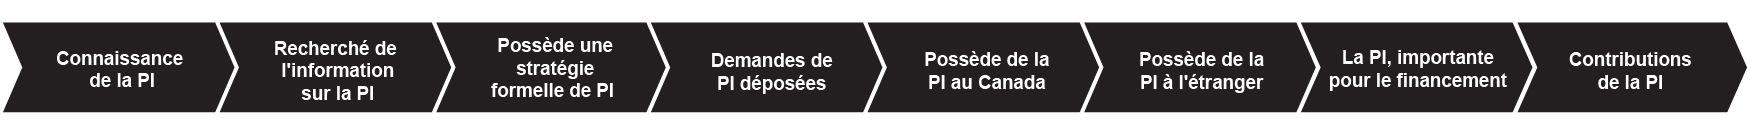 La Figure 28 montre les 8 étapes du parcours de l'innovation en matière de PI : Connaissance de la PI, Recherché de l'information sur la PI, Possède une stratégie formelle de PI, Demandes de PI déposées, Possède de la PI au Canada, Possède de la PI à l'étranger, La PI, importante pour le financement, et Contributions de la PI.